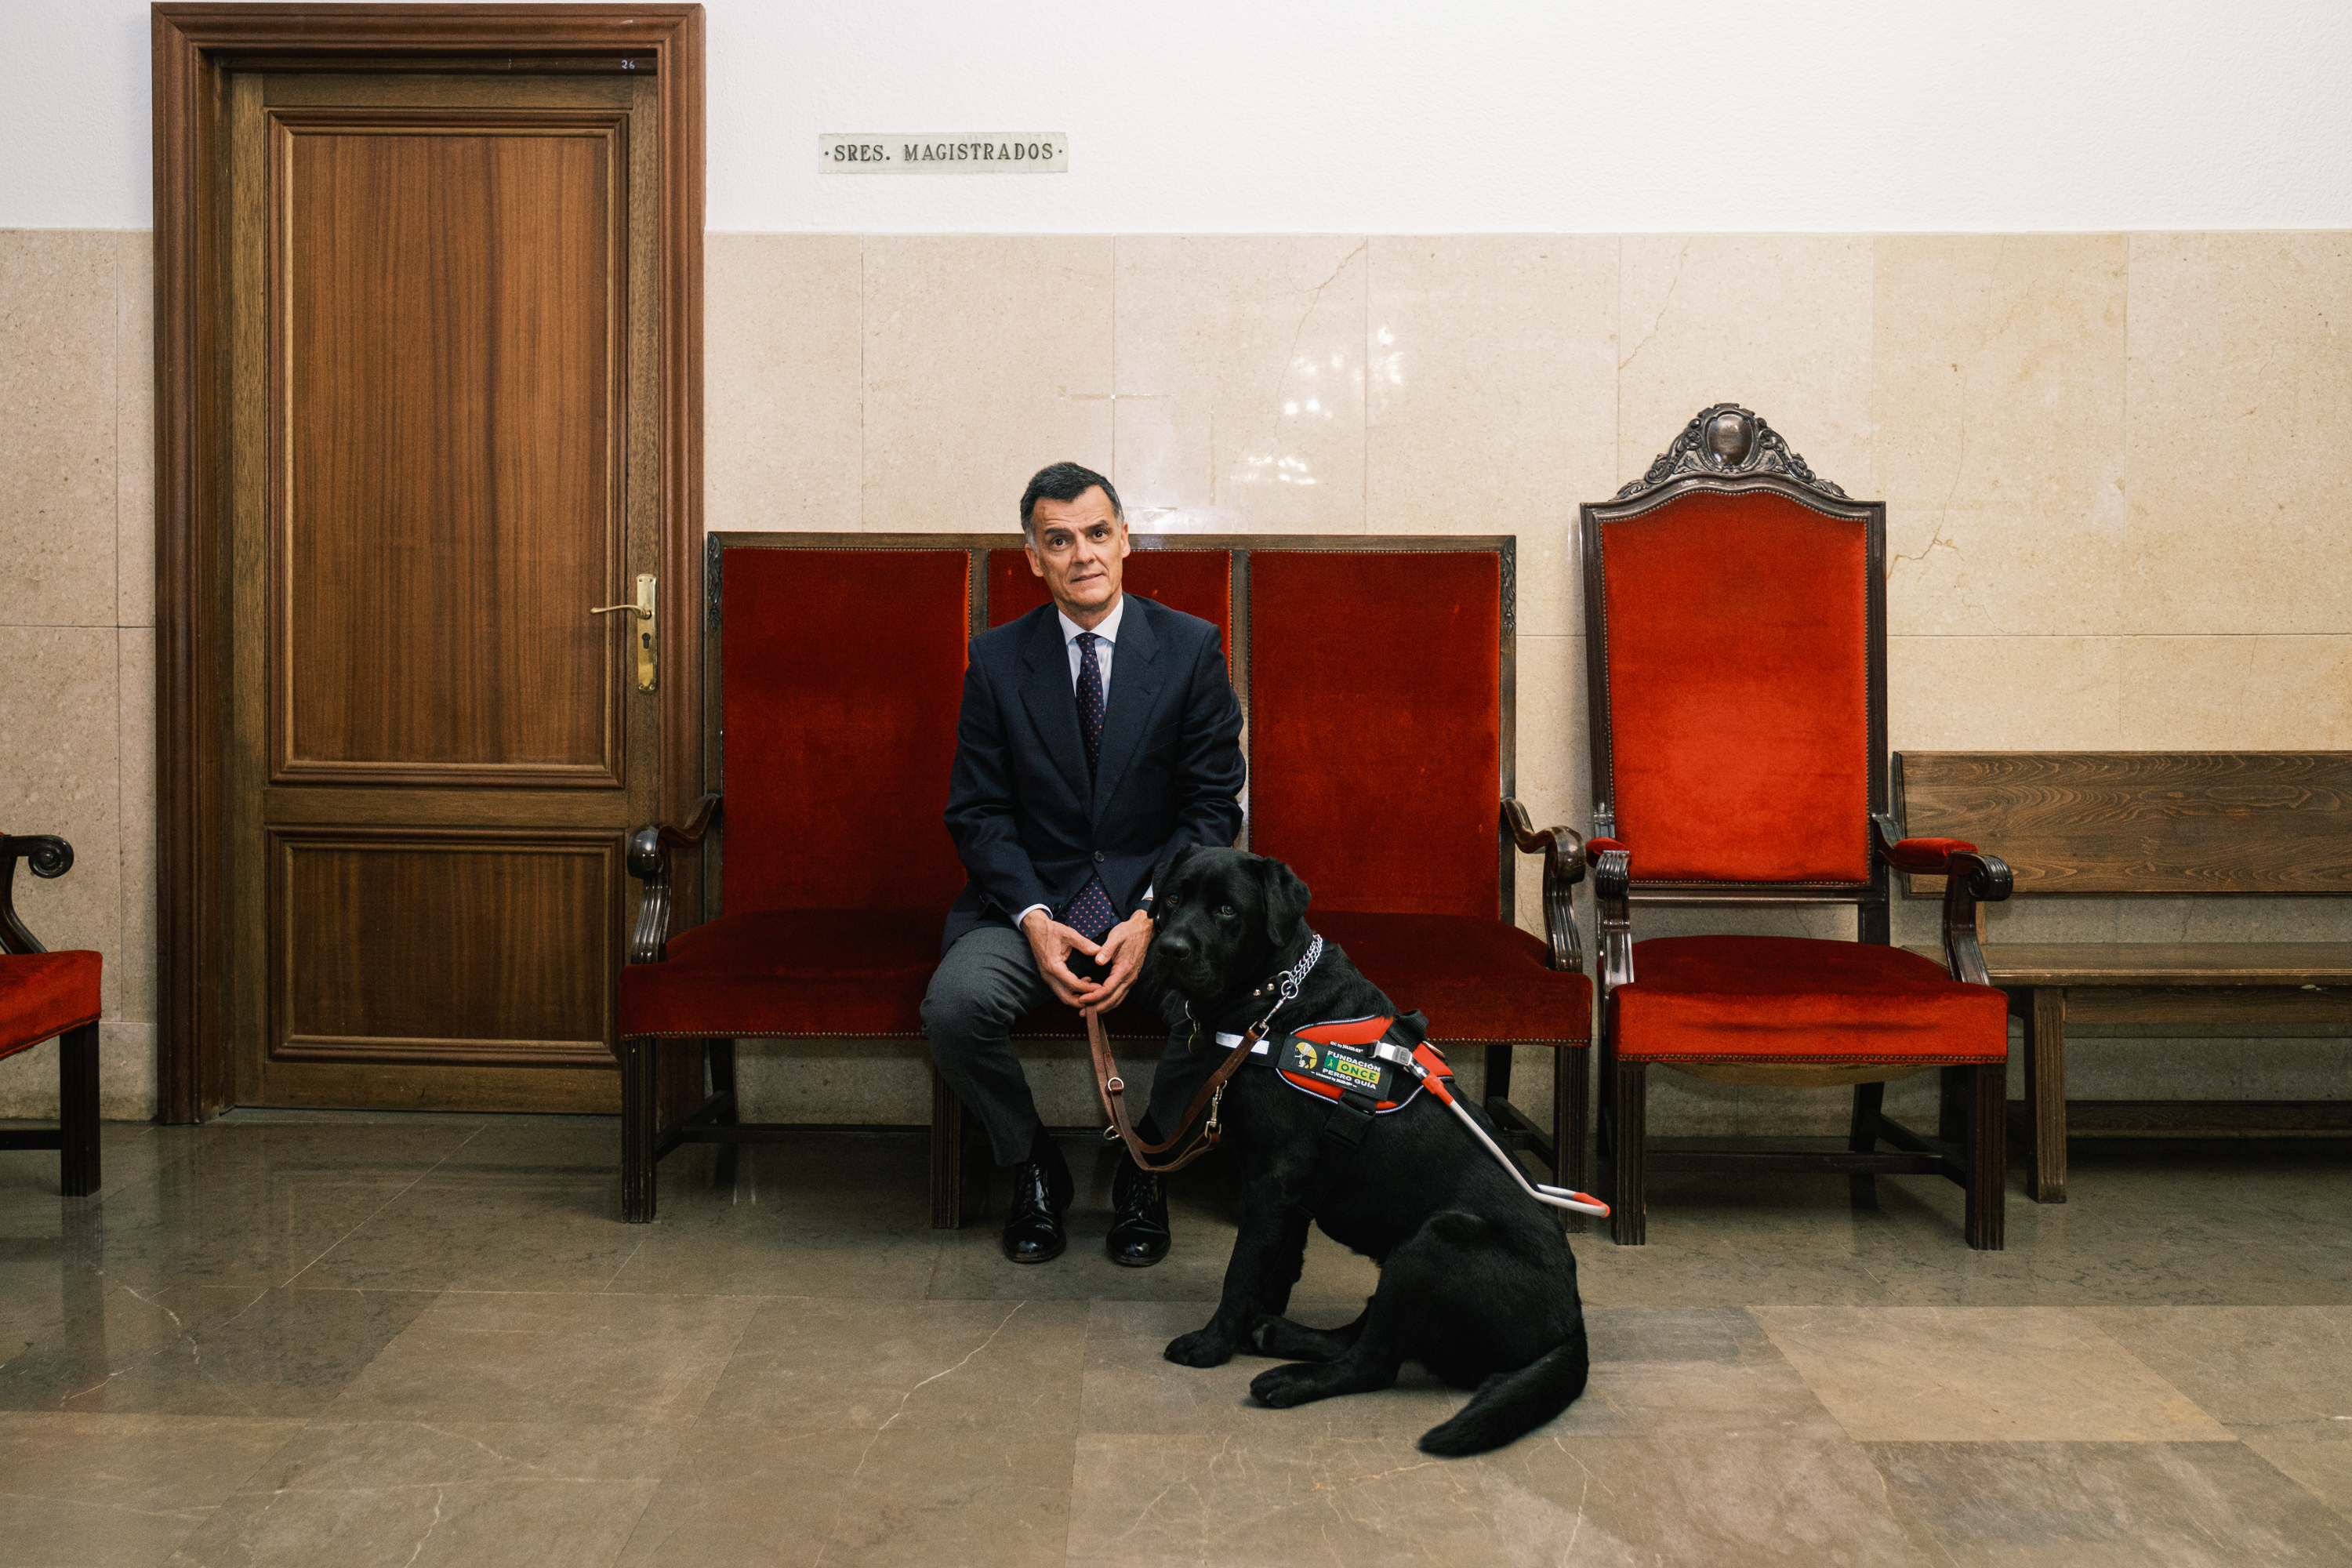 El juez sentado en un banco con su perro guía sentado también